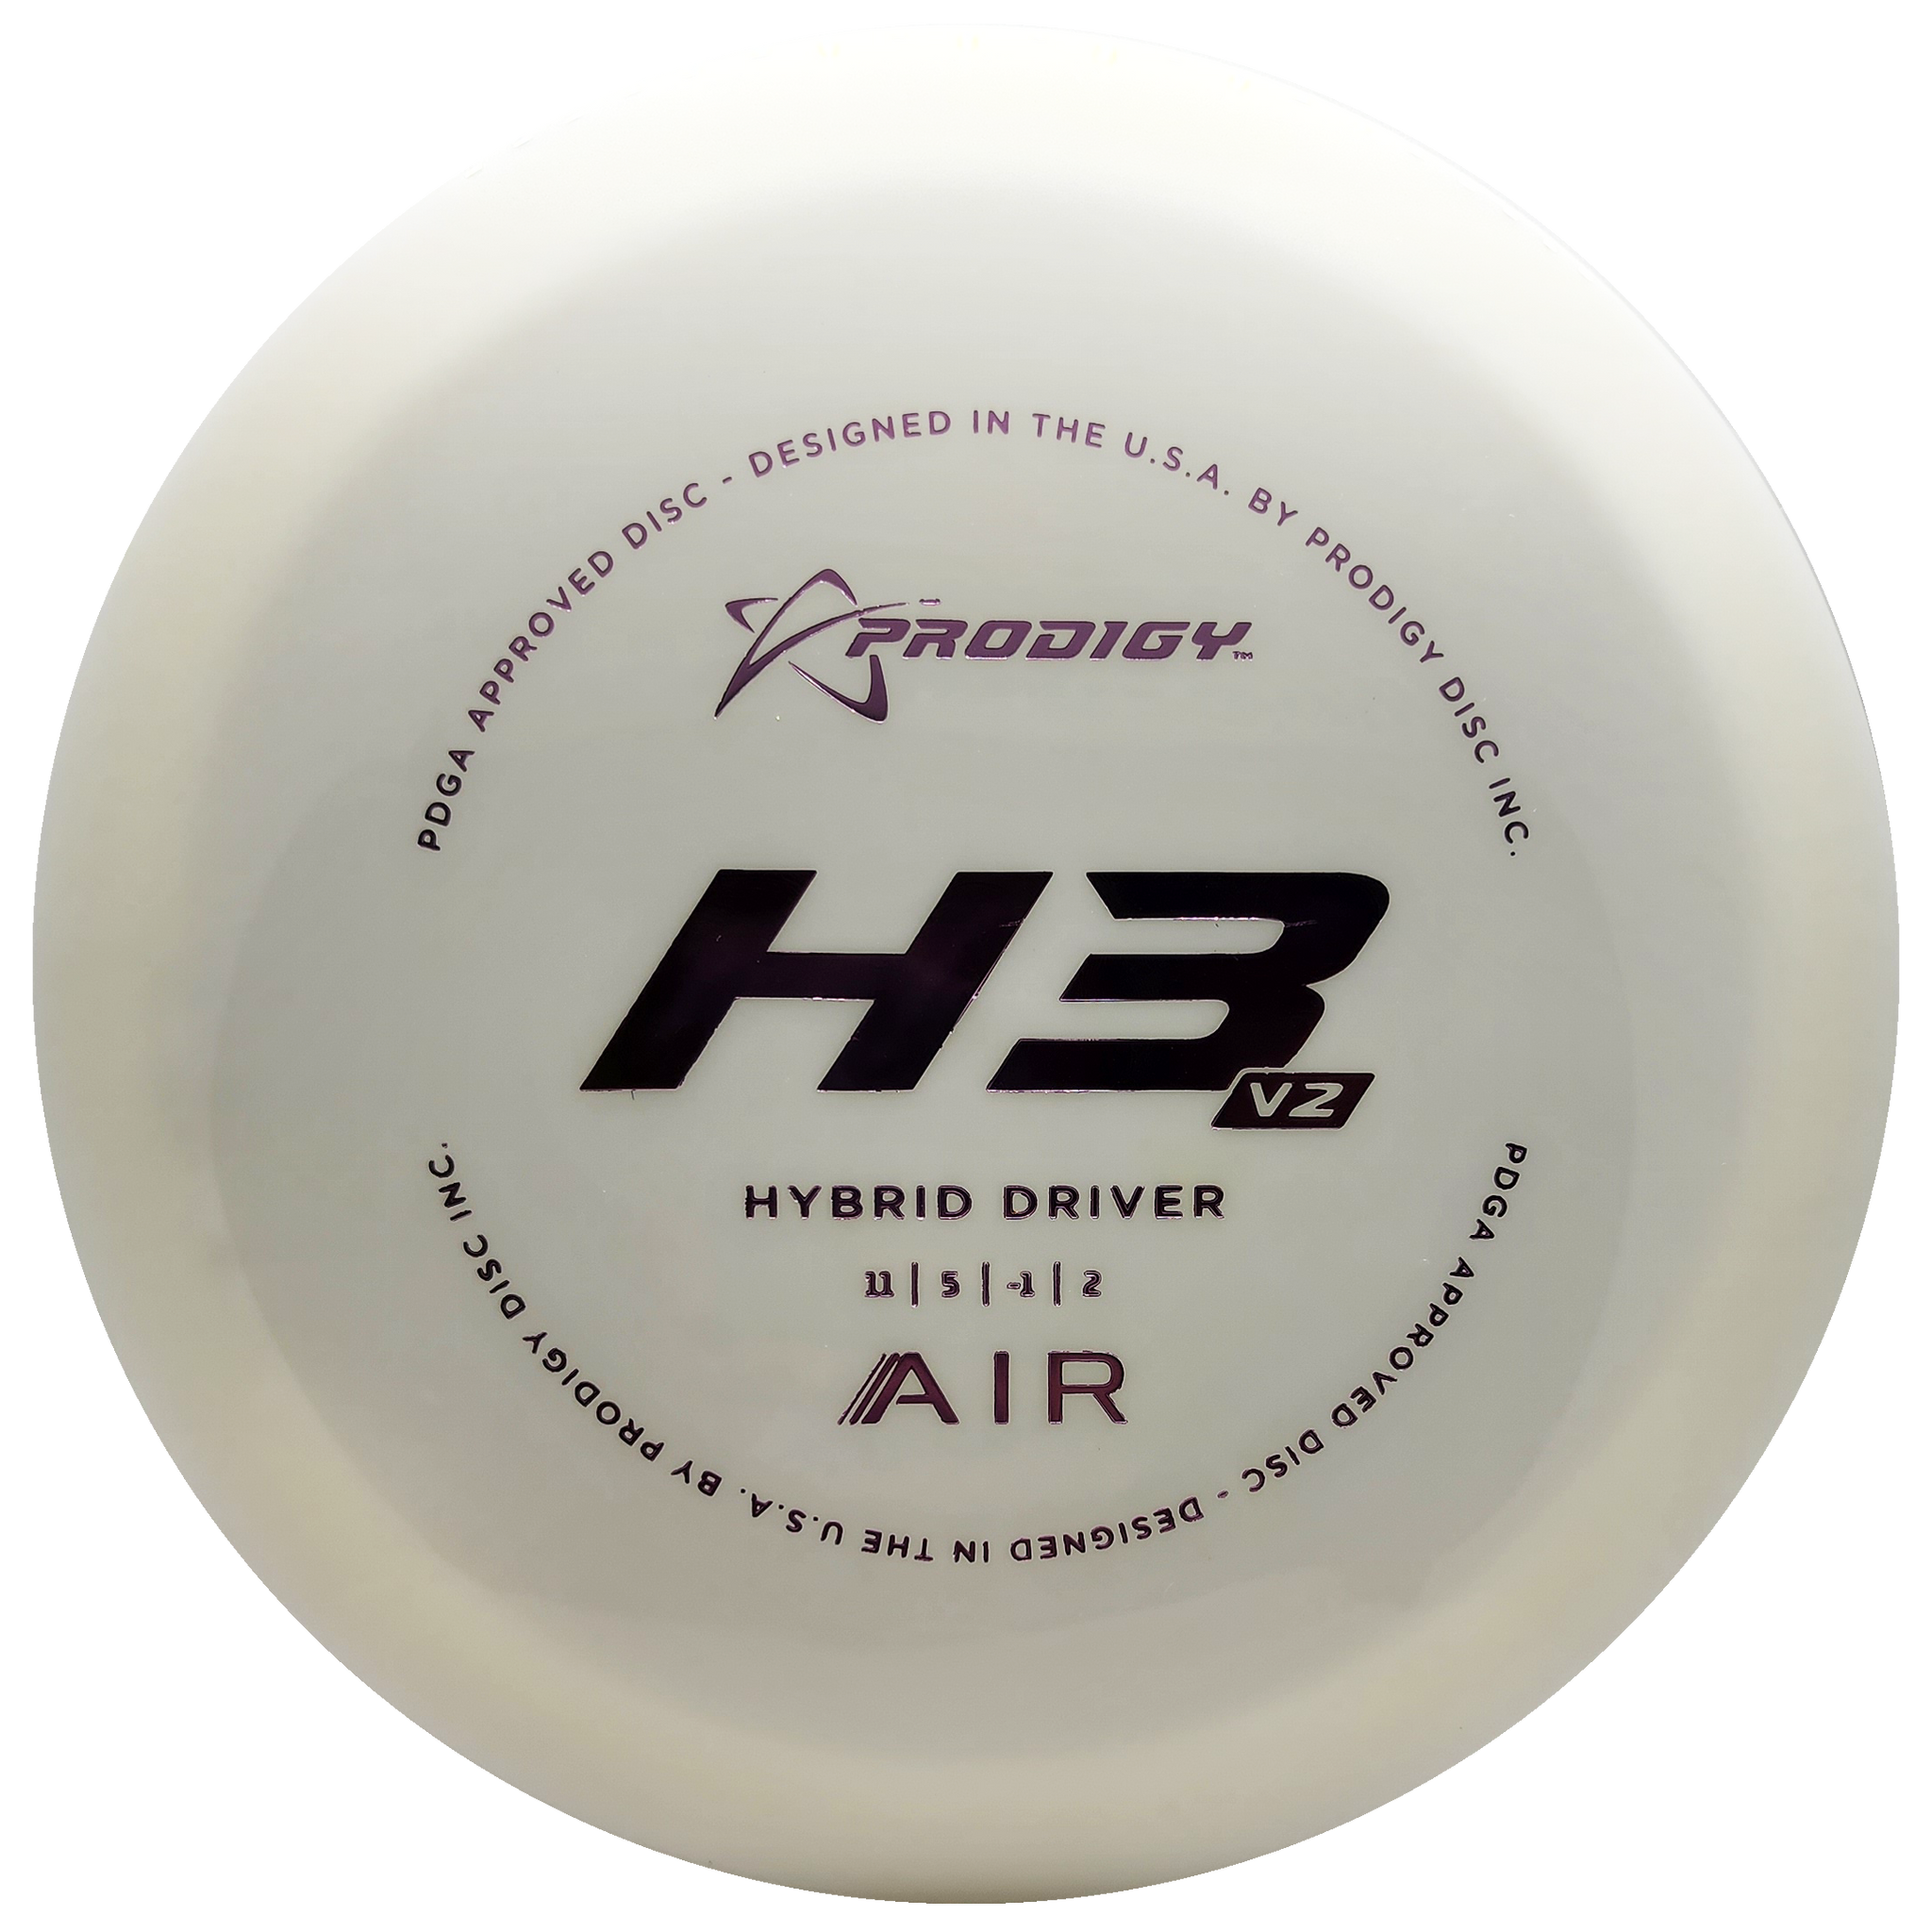 Prodigy: H3 V2 Hybrid Driver Air - White/Light Pink